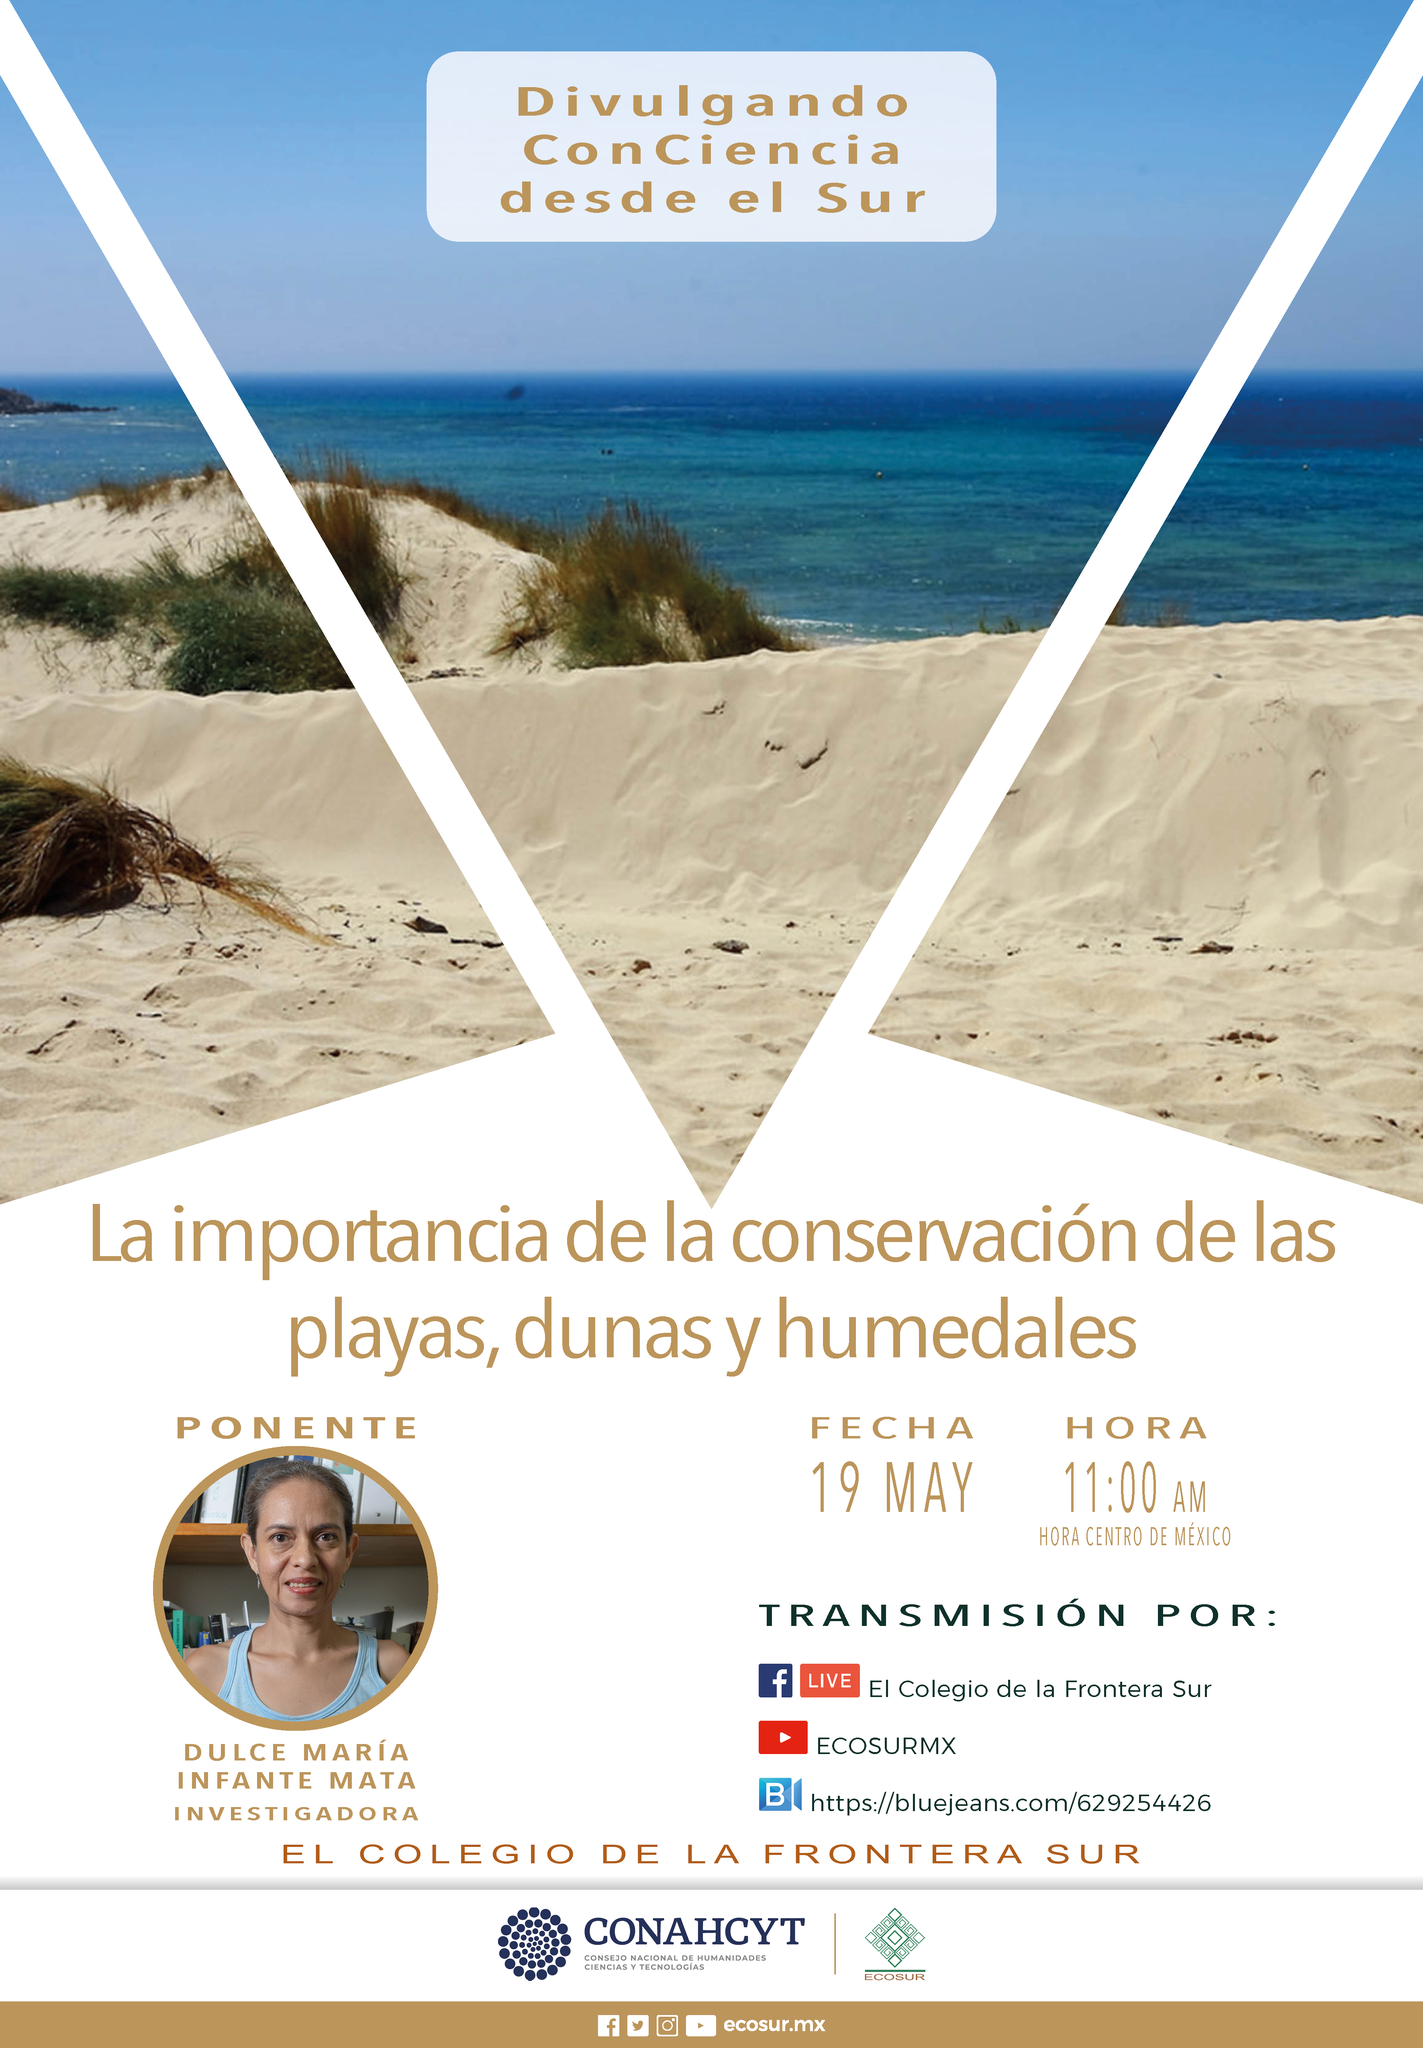 La importancia de la conservación de las playas, dunas y humedales